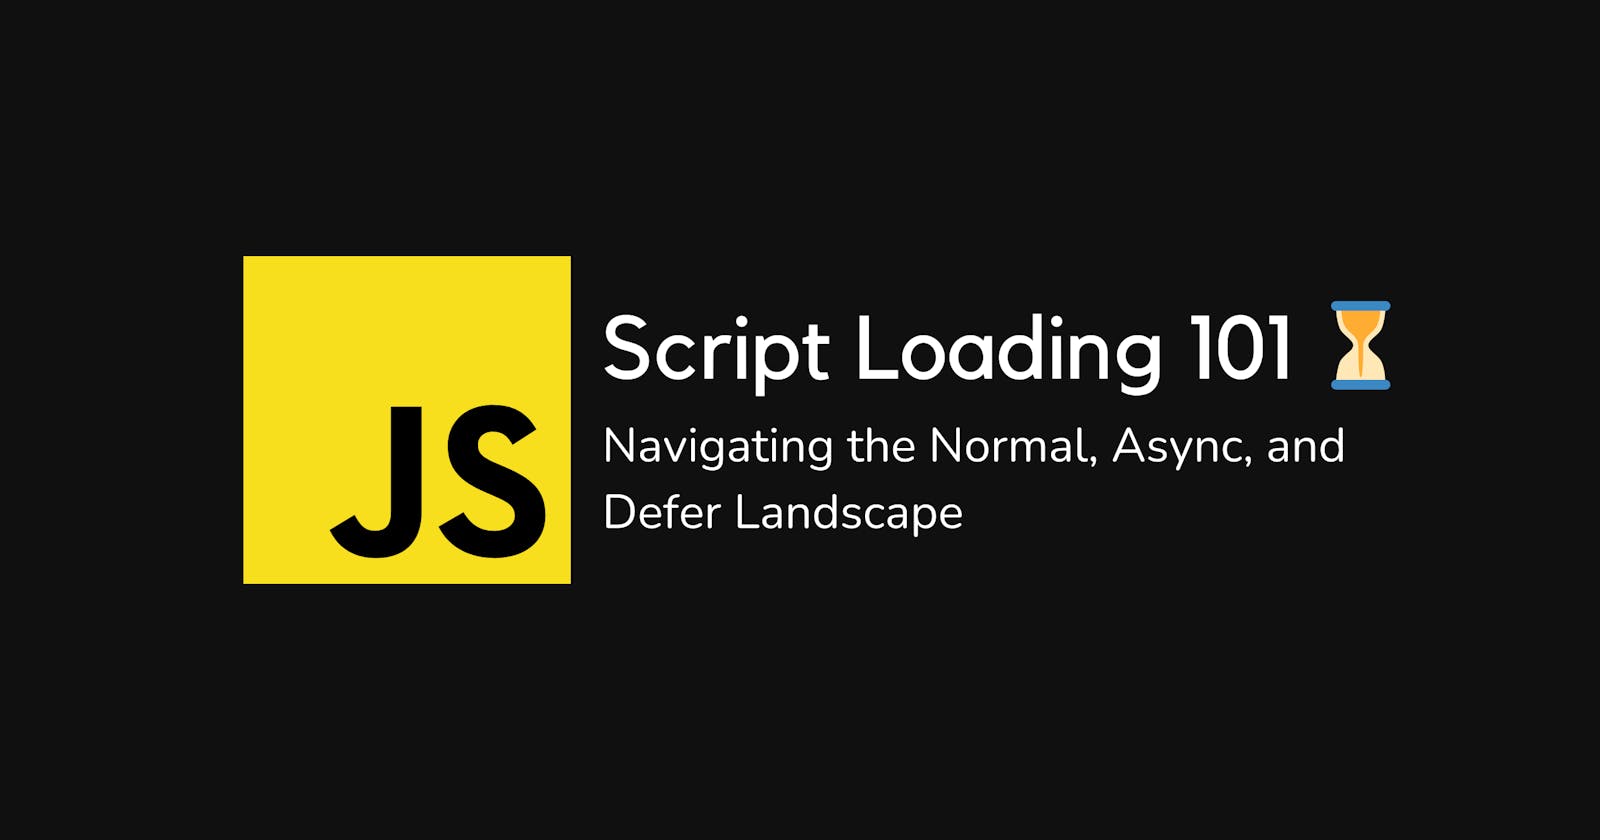 Script Loading 101: Navigating the Normal, Async and Defer Landscape ⏳